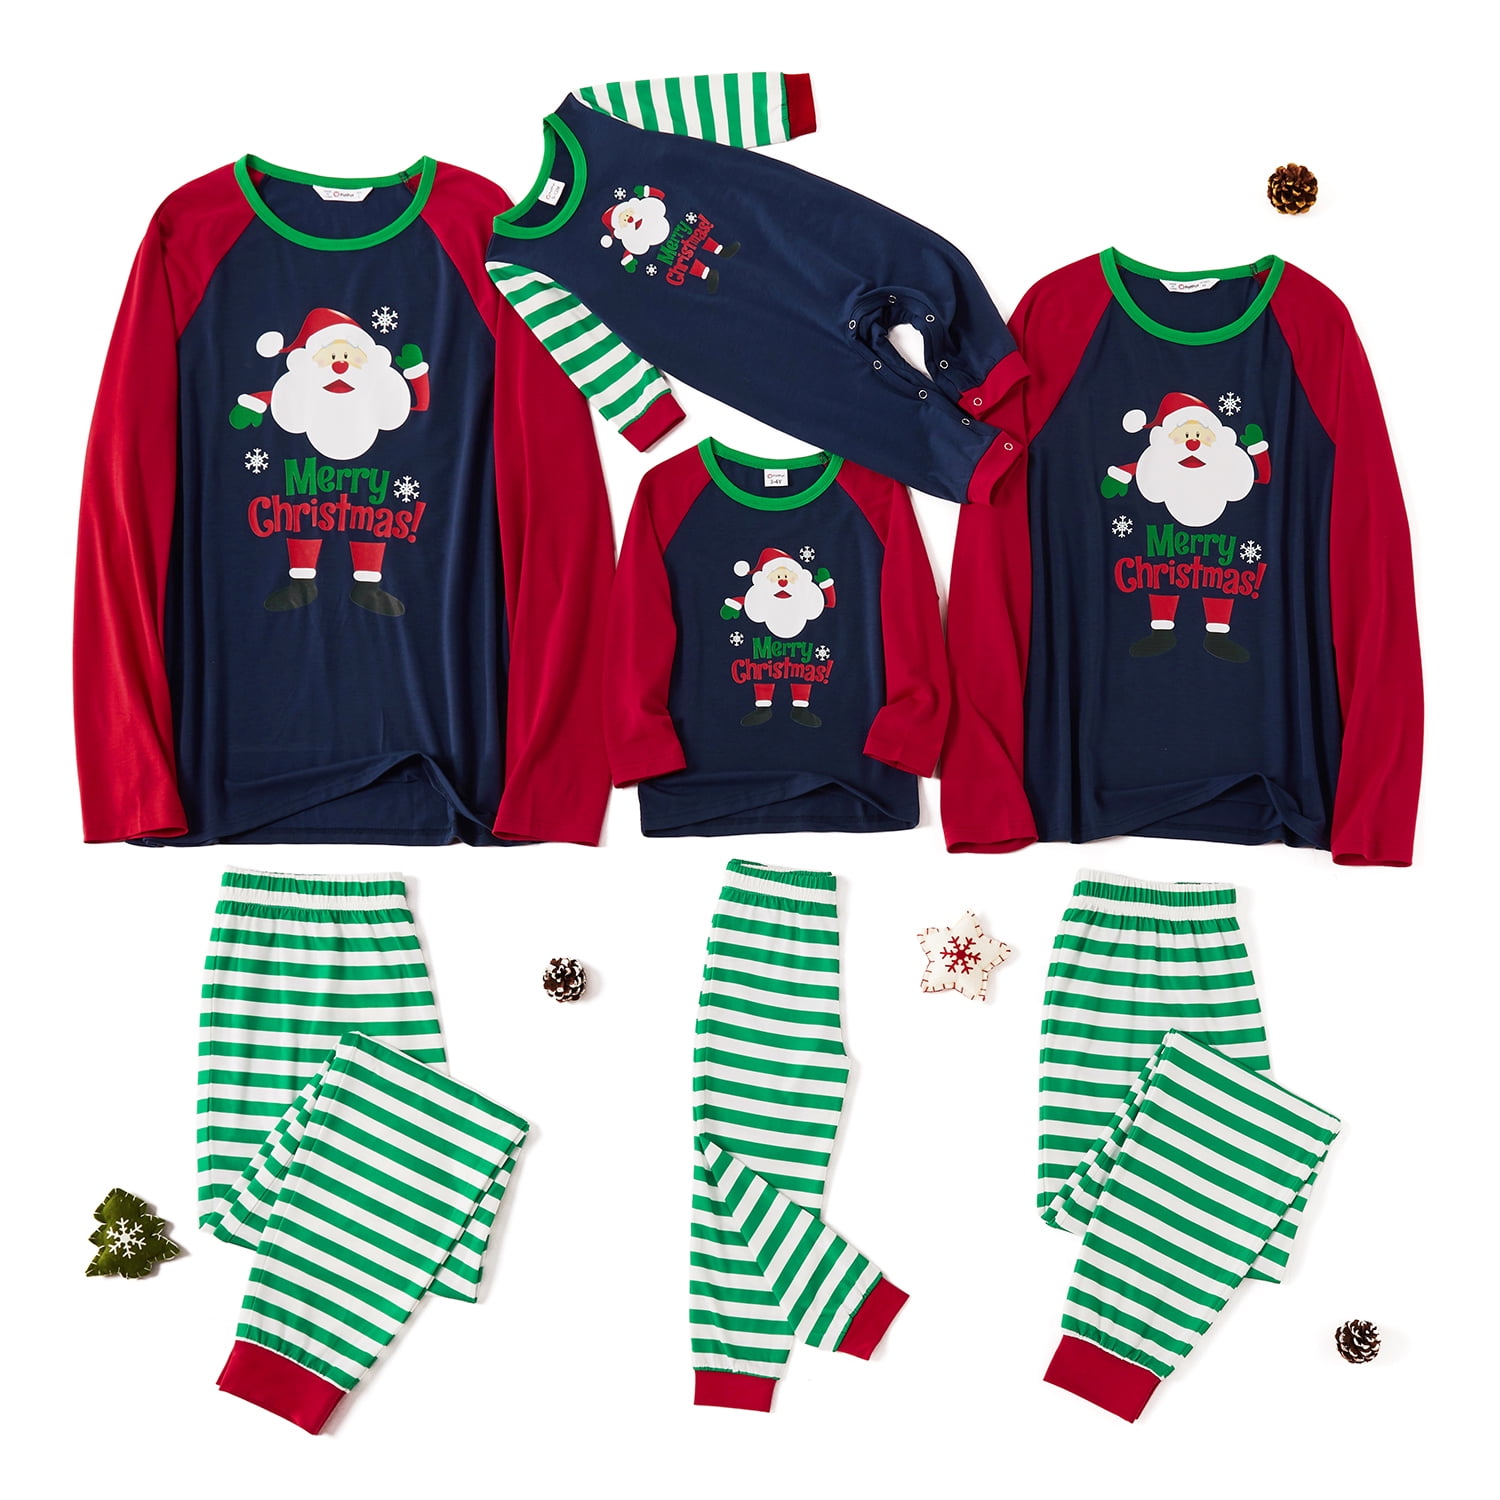 PatPat Family Matching Santa Print Striped Christmas Pajamas Sets ...